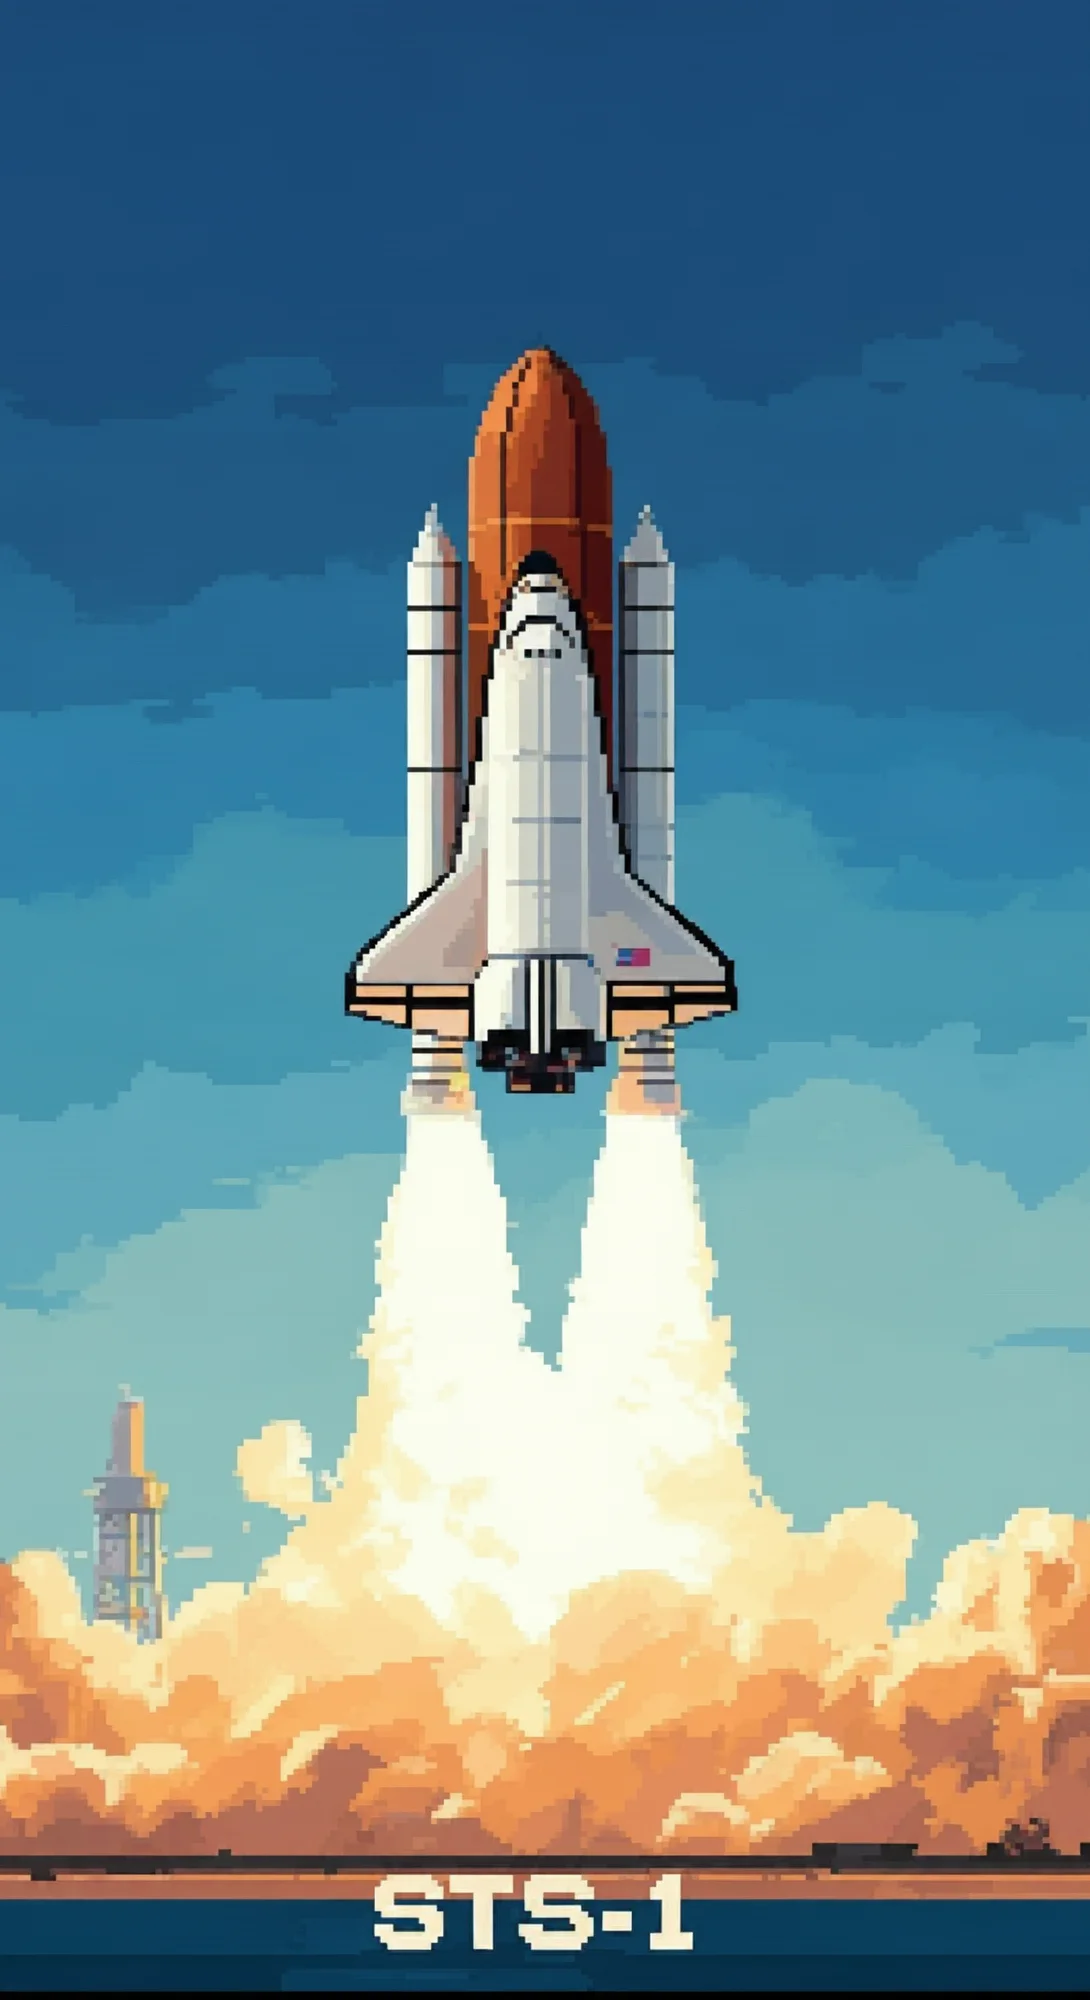 Une illustration en pixel art de la navette spatiale STS-1 se lançant dans un ciel bleu, laissant une traînée de fumée et de flammes. Le texte « STS-1 » se trouve en bas de l'image.